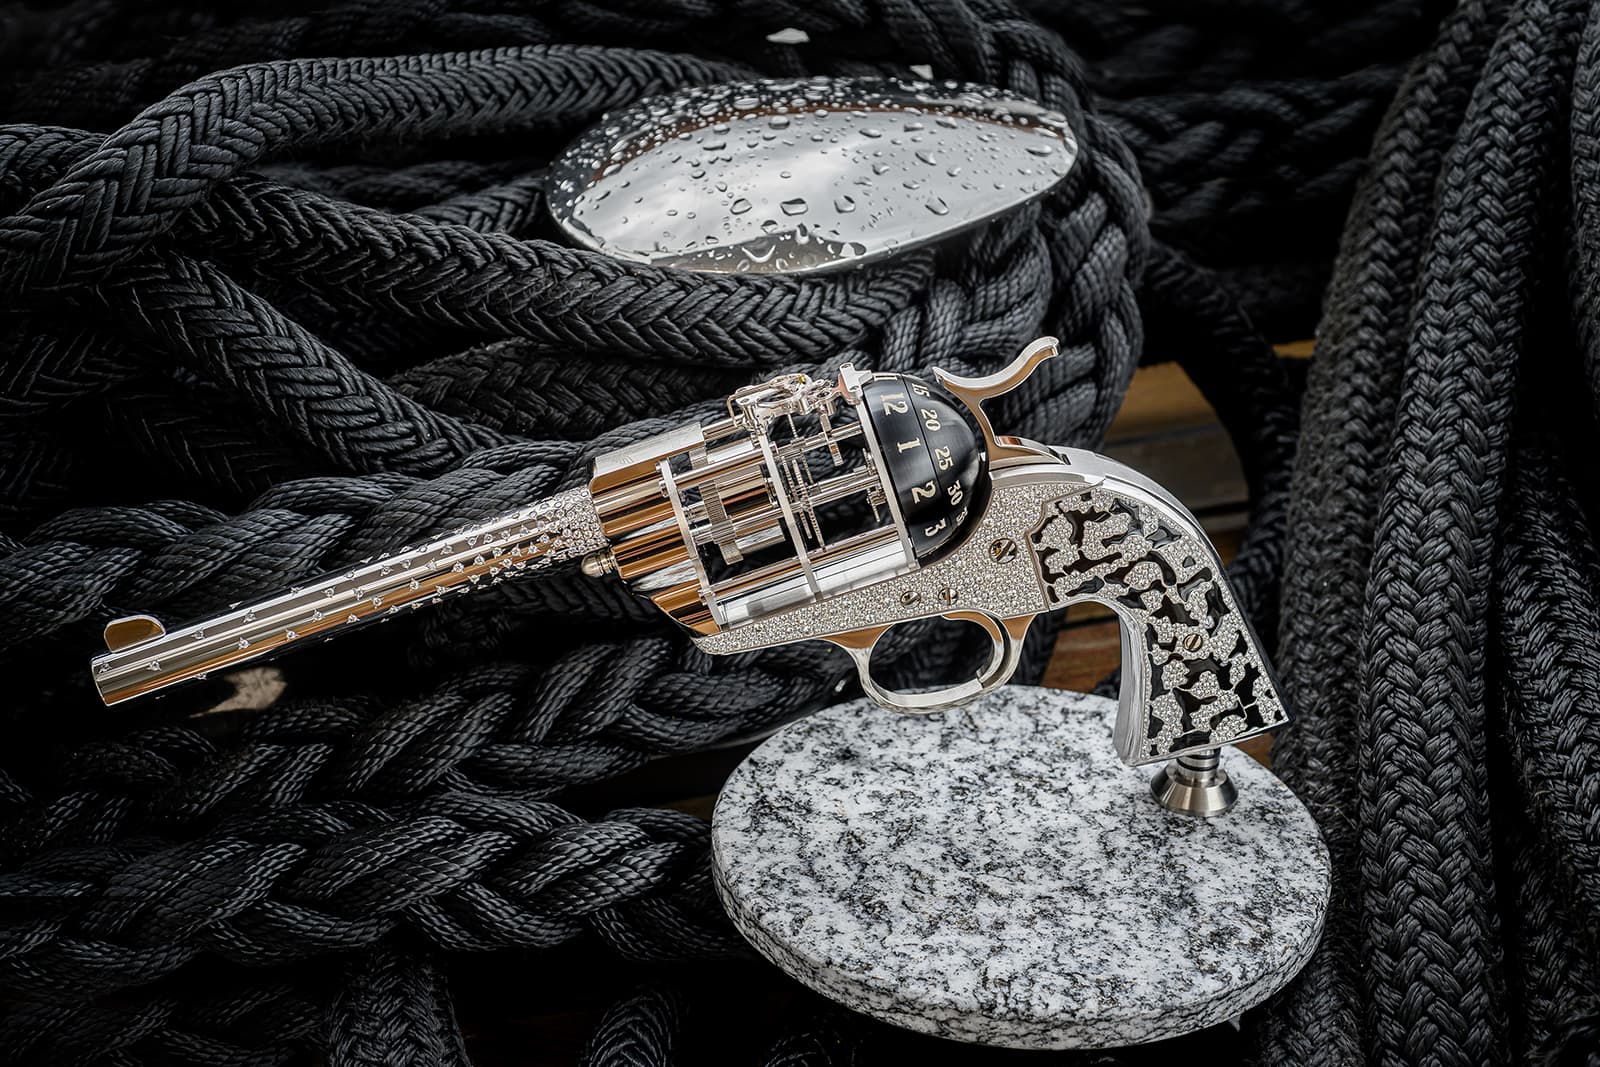 Настольные часы в форме револьвера Diamond были разработаны компанией Unnamed Society, создающей предметы искусства для эксклюзивной клиентуры